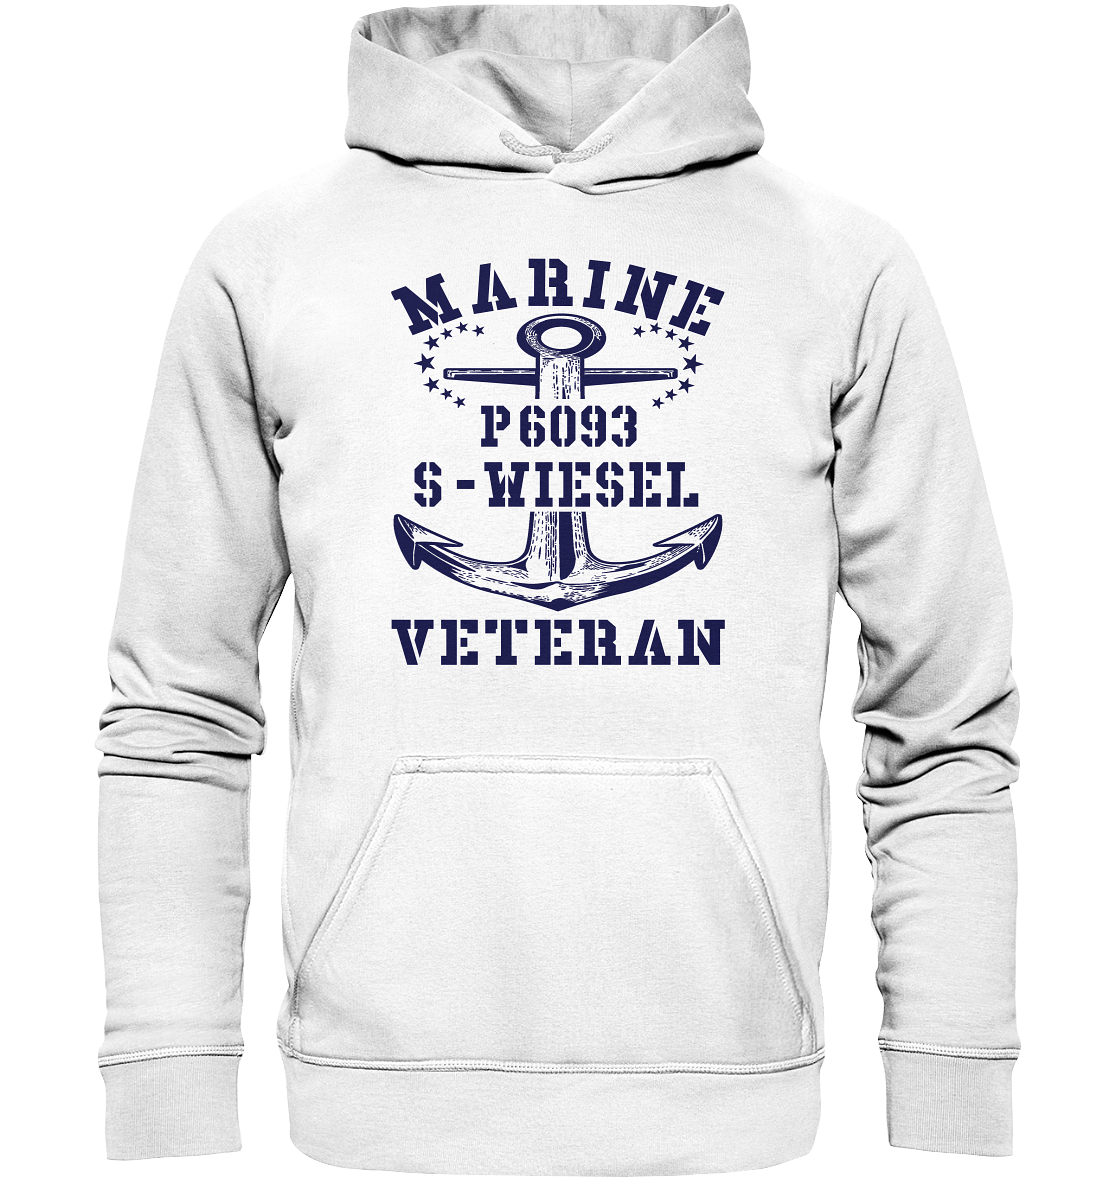 P6093 S-WIESEL Marine Veteran - Basic Unisex Hoodie